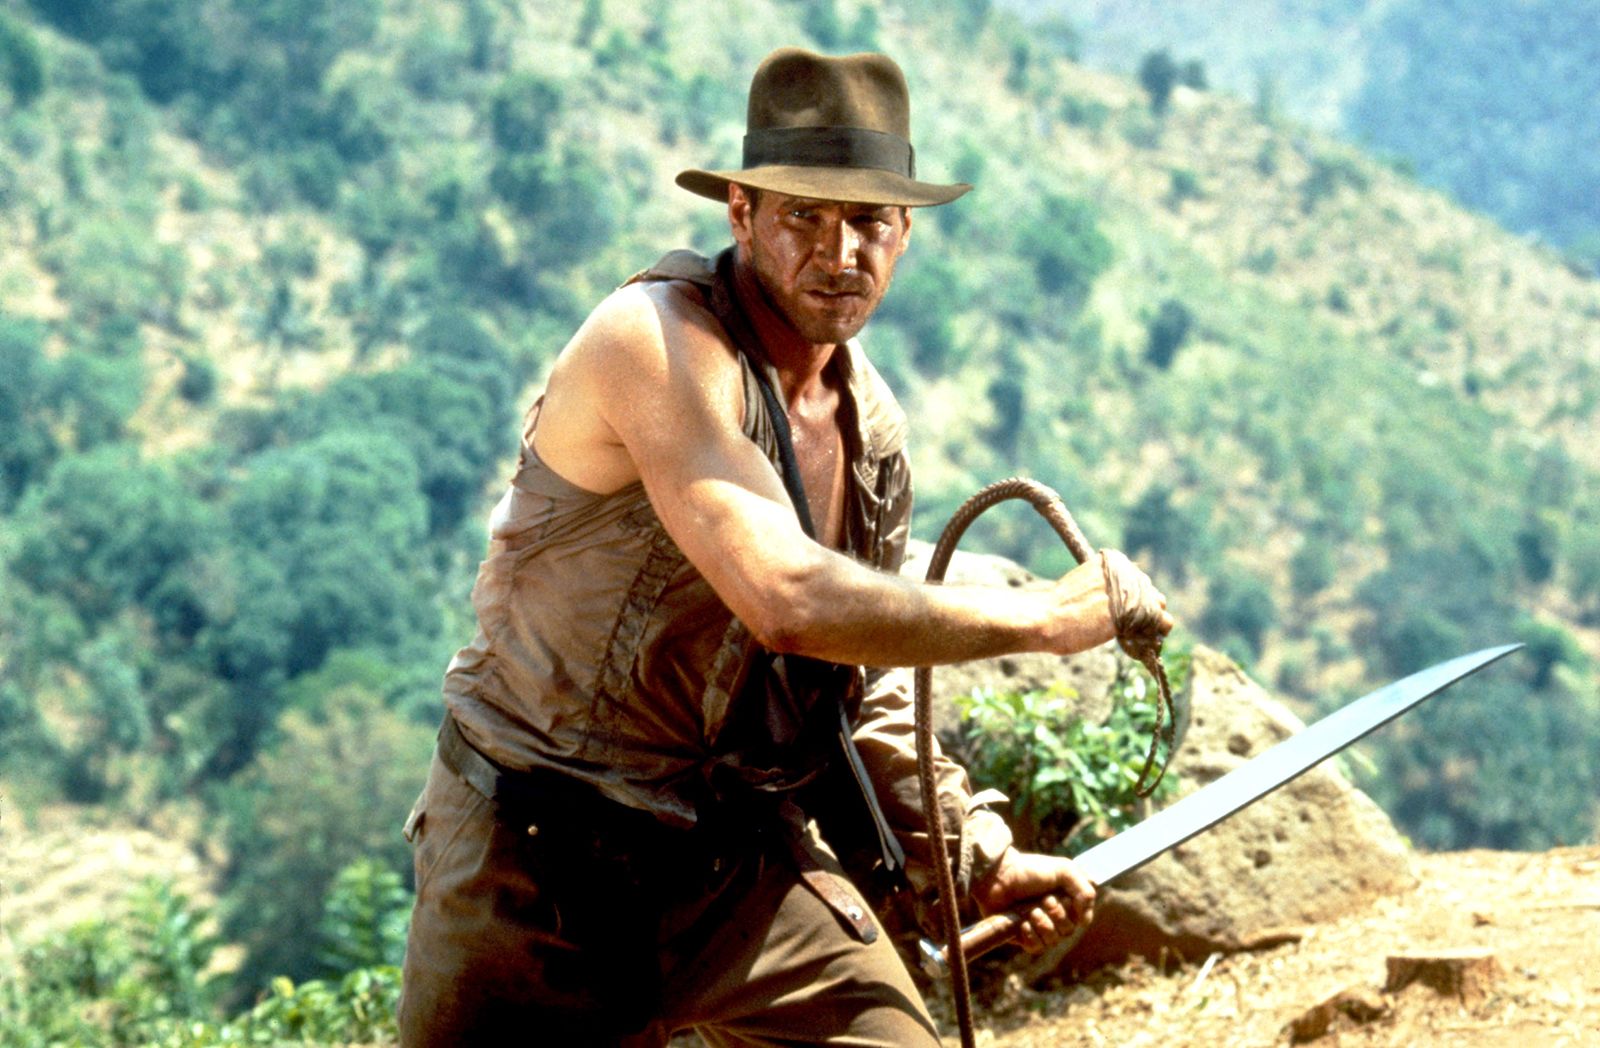 La serie de televisión de Indiana Jones está siendo considerada para Disney+